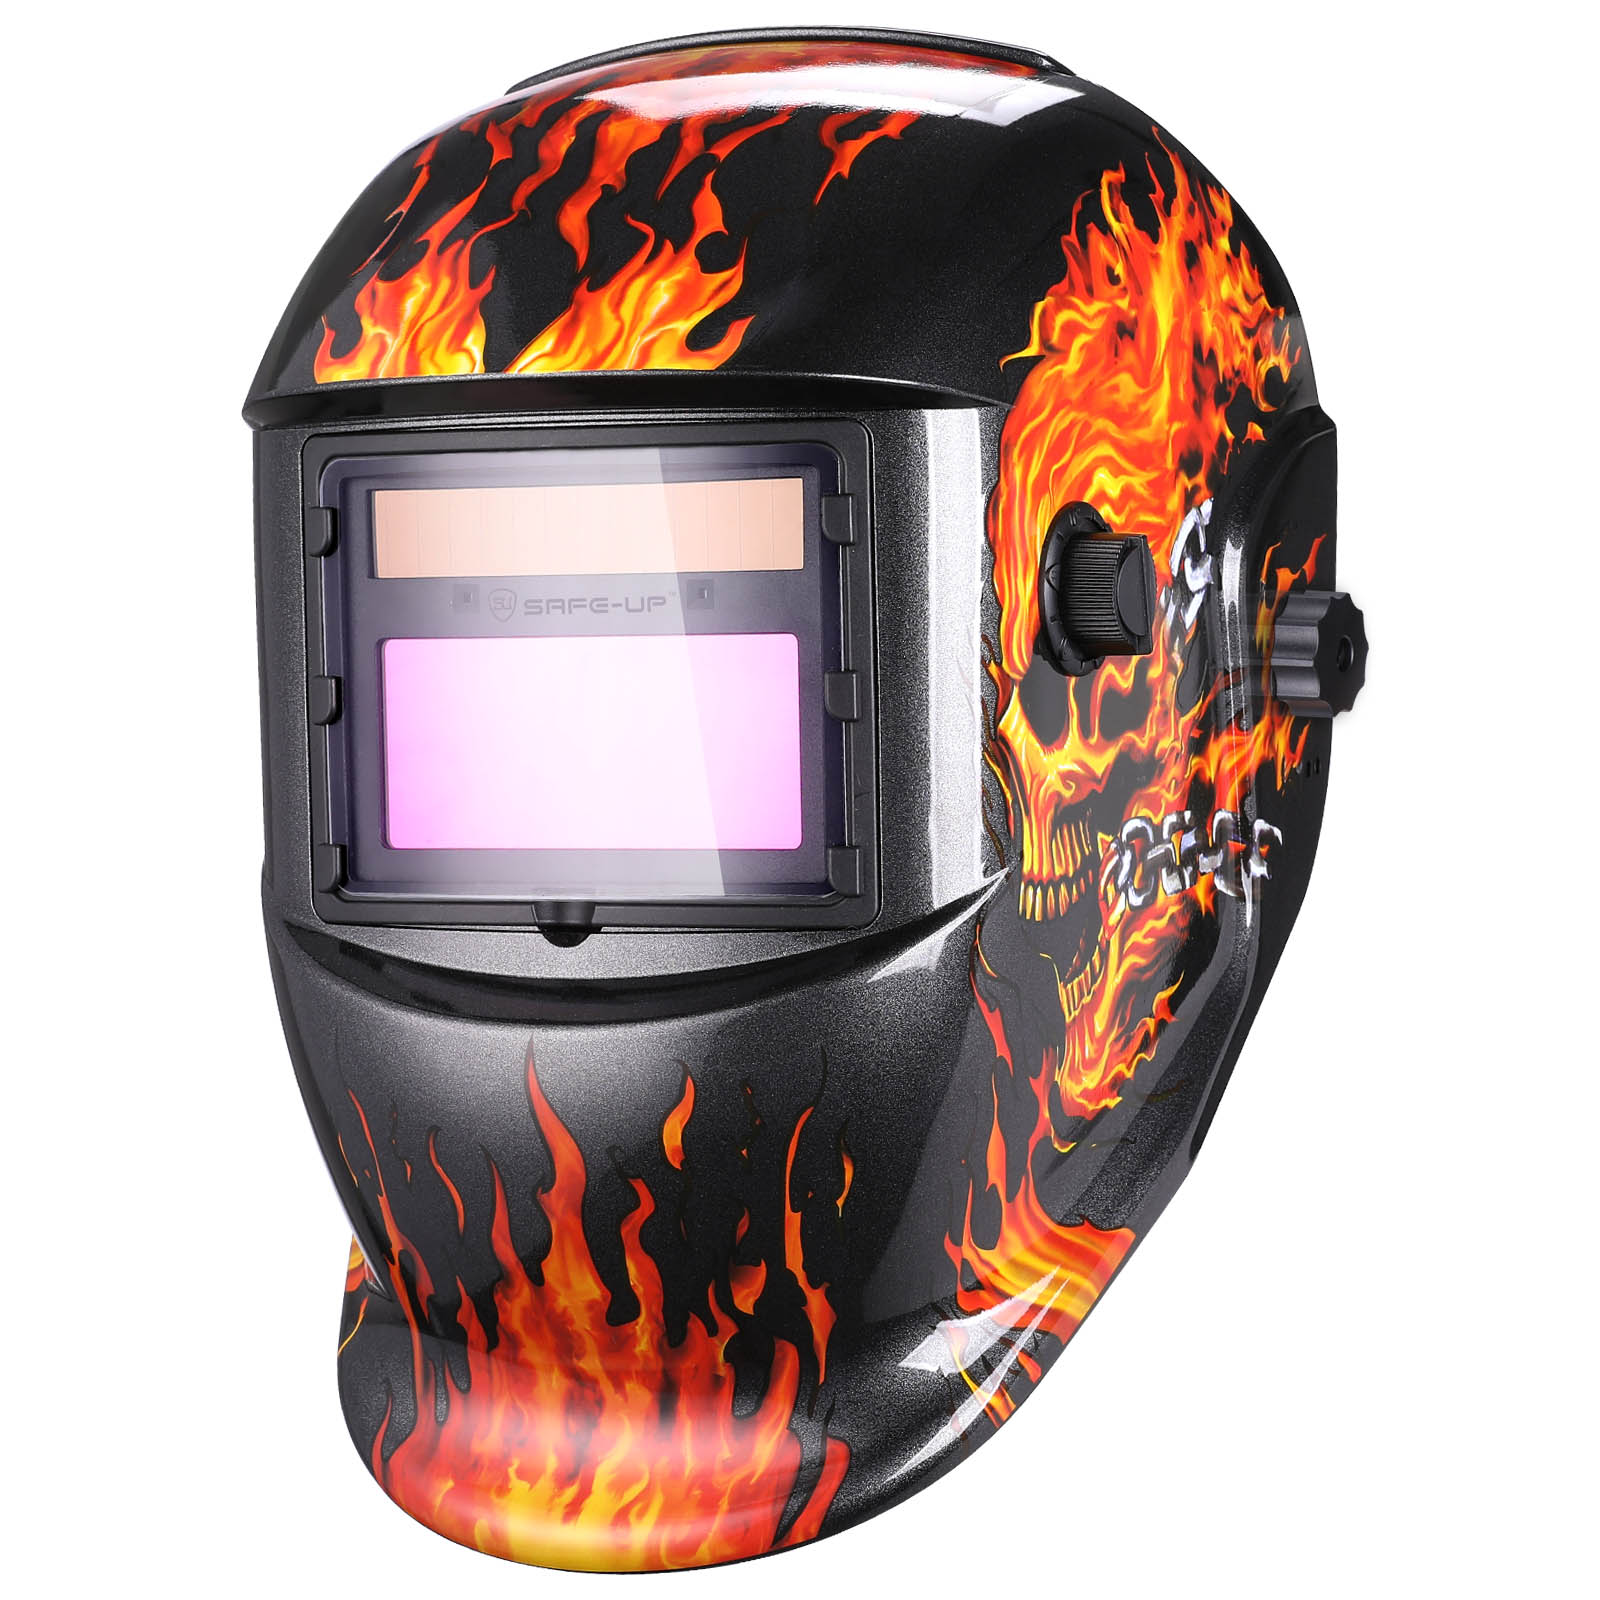 UNMT-Flame Skull Auto Darkening Welding Helmet Featured Image